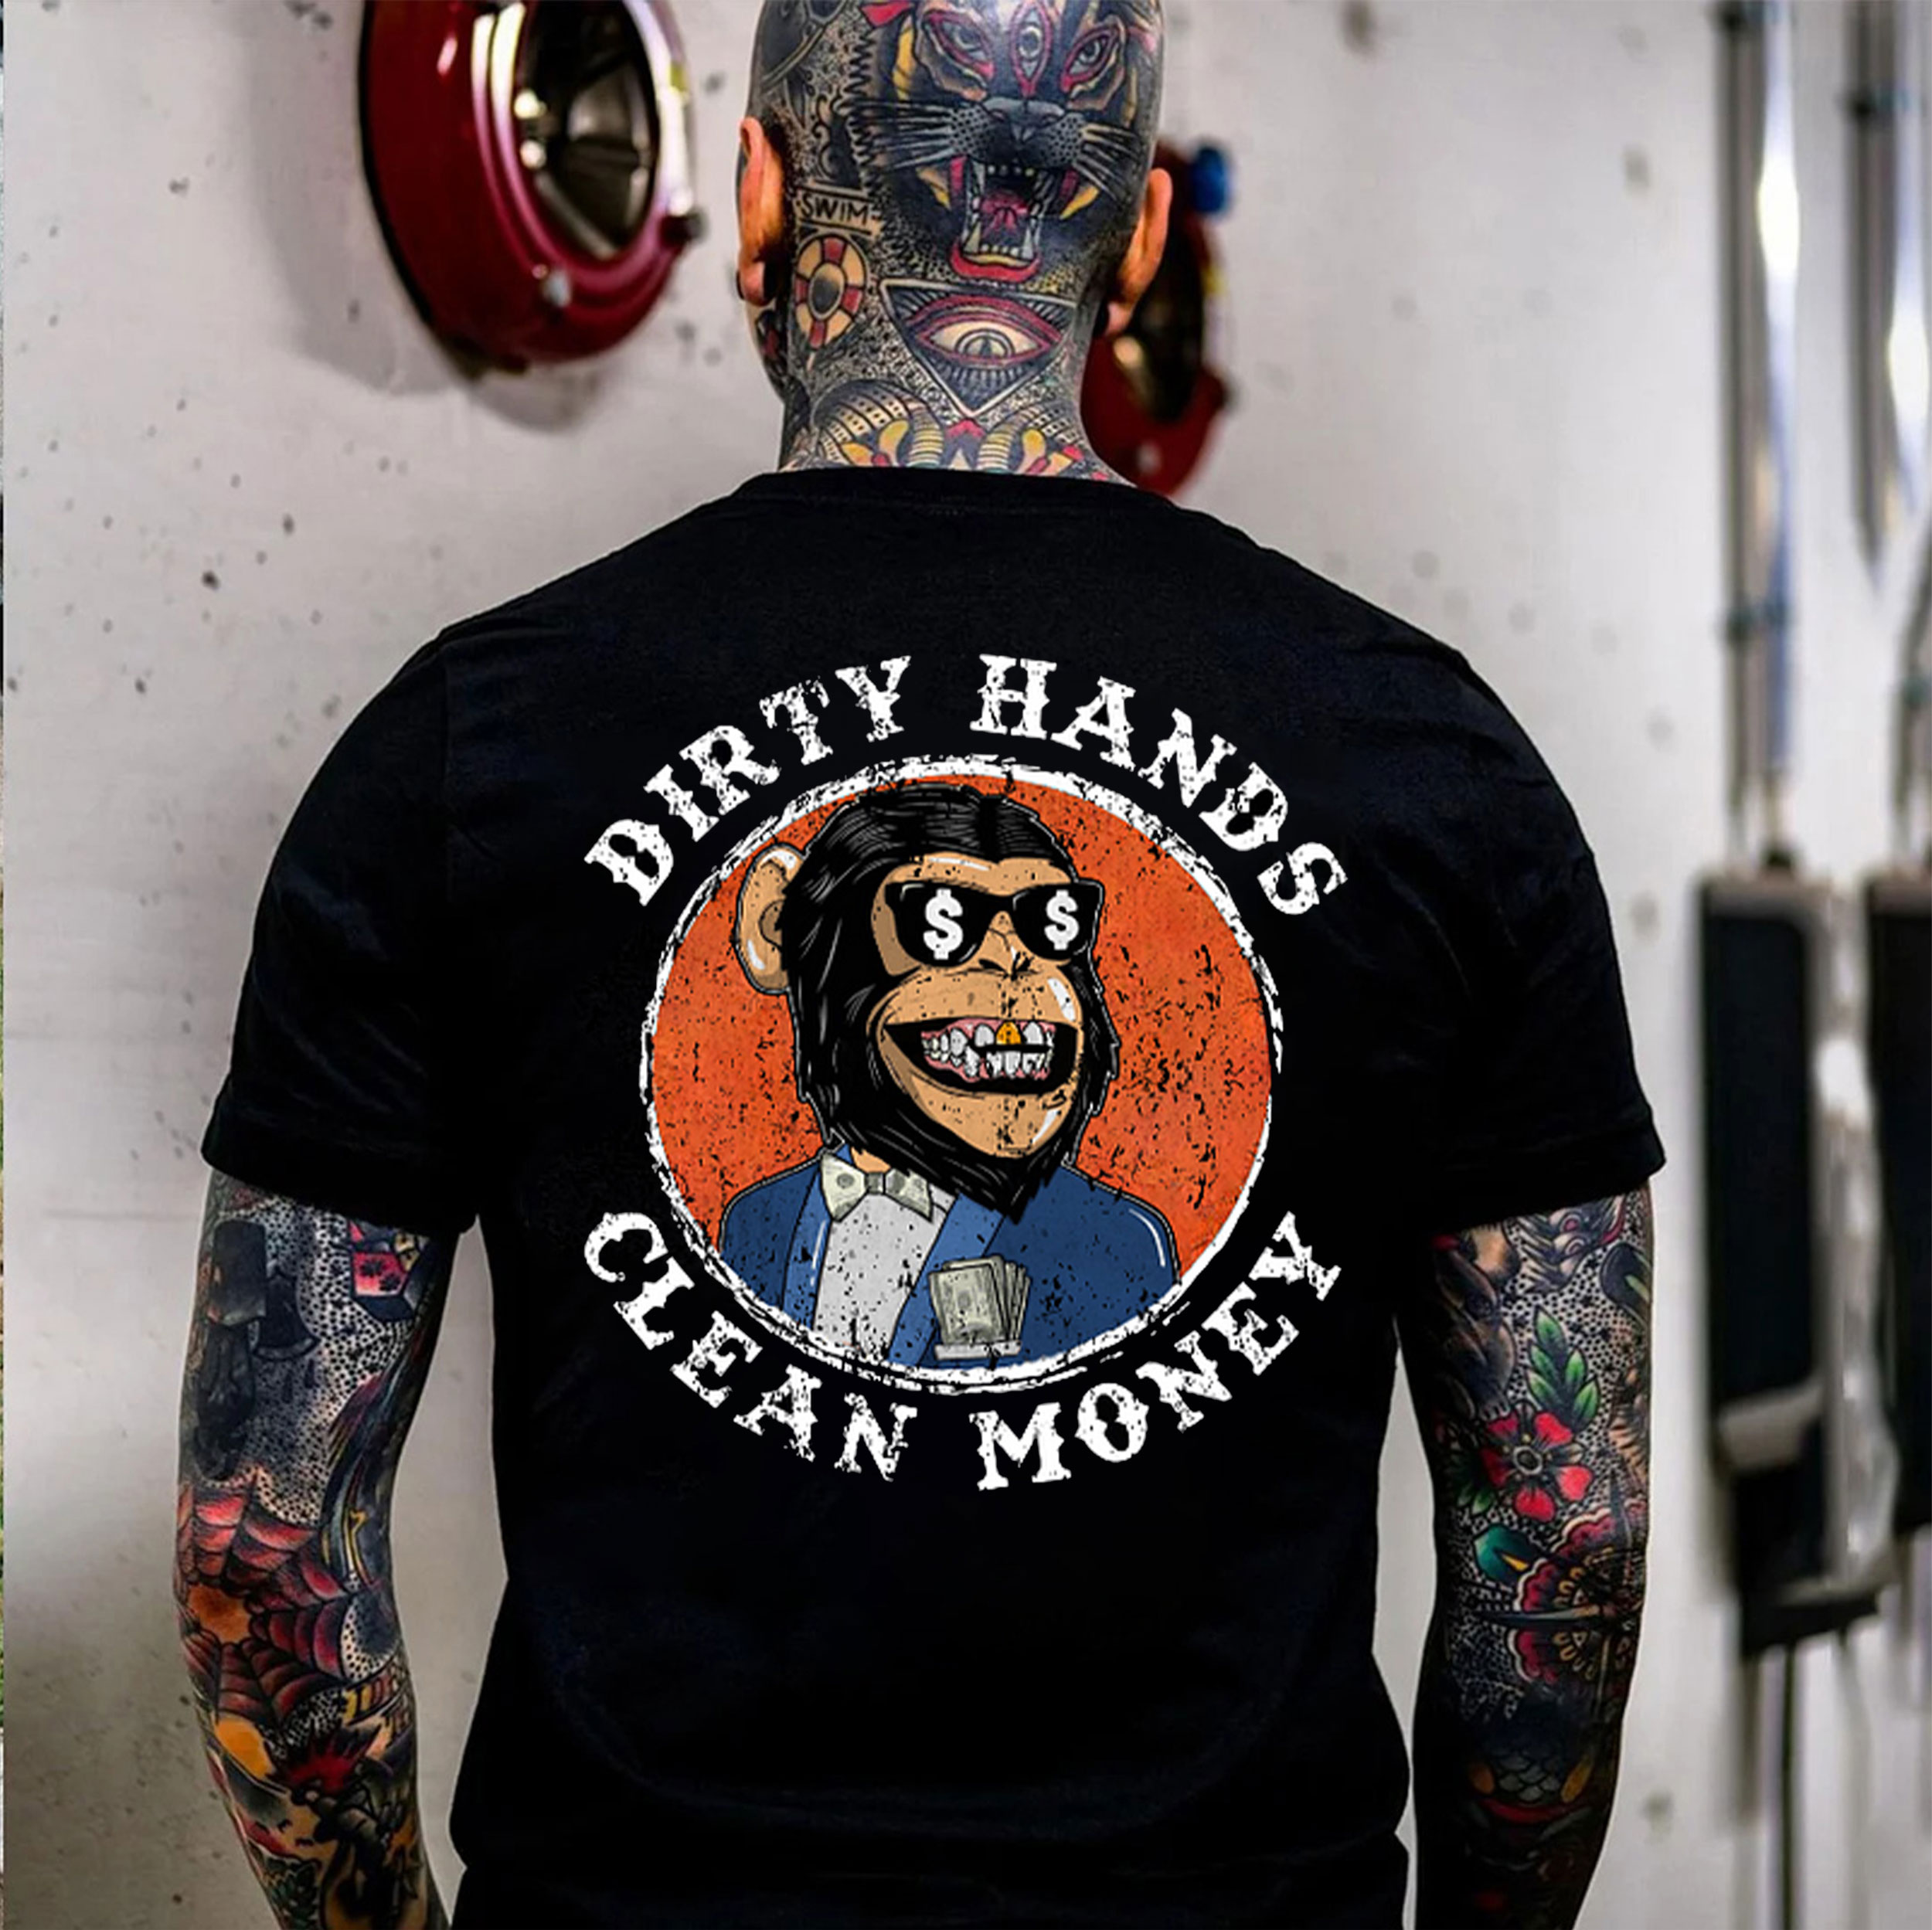 DIRTY HANDS CLEAN MONEY Print T-Shirt